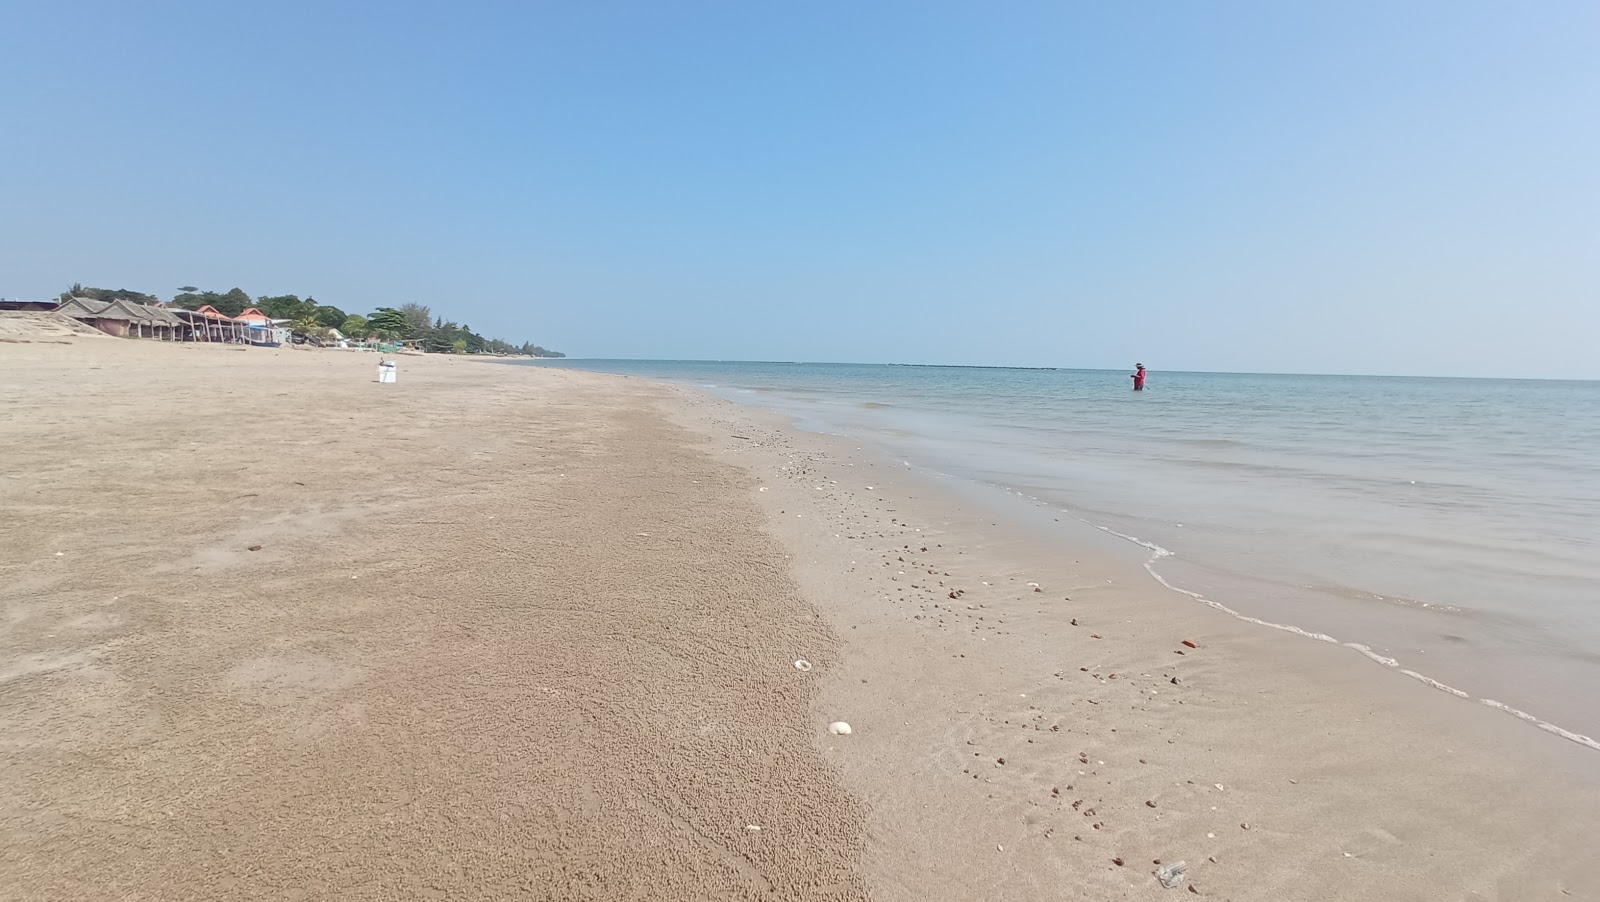 Zdjęcie Chaosamran Beach - popularne miejsce wśród znawców relaksu